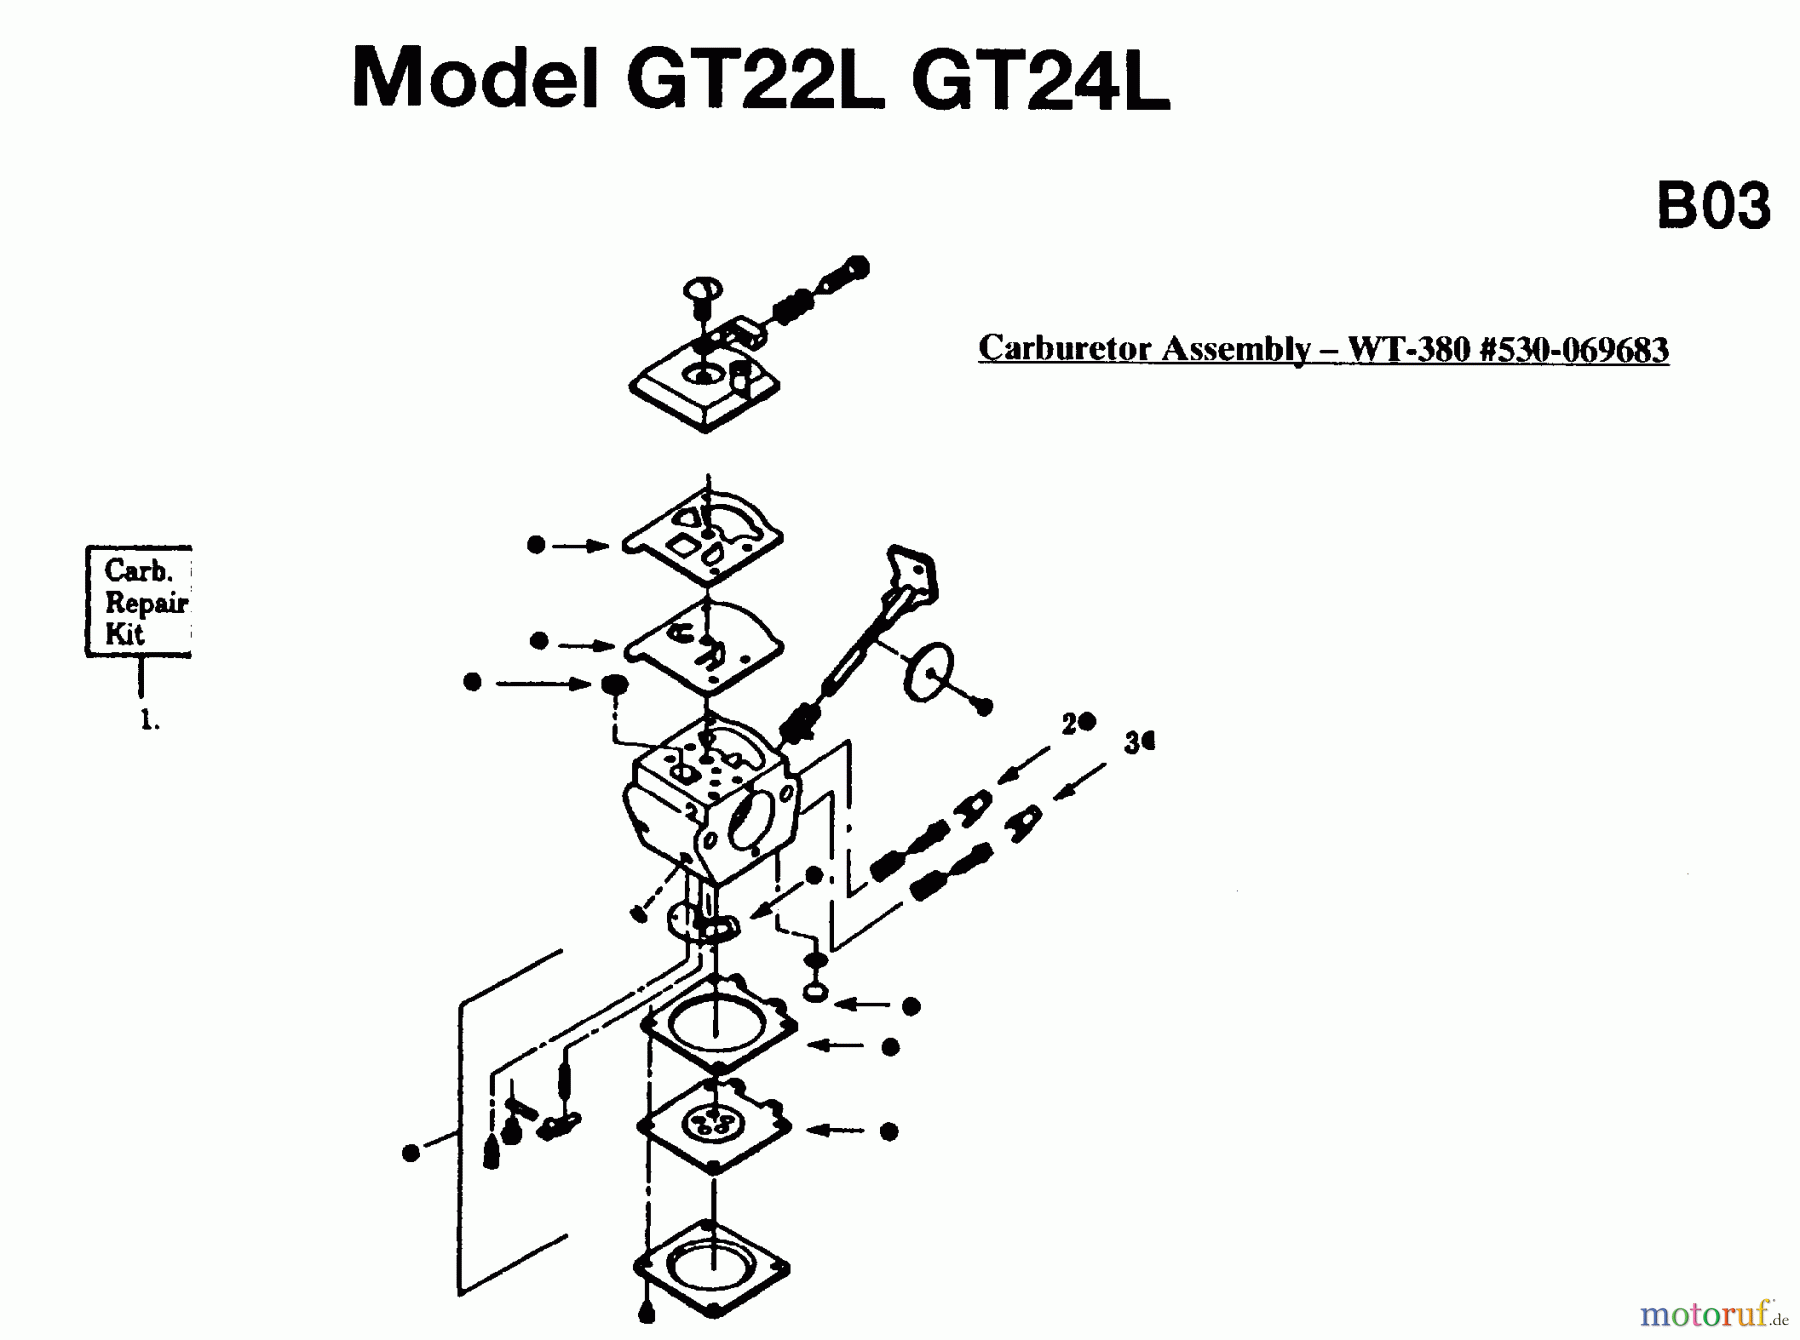  Jonsered Motorsensen, Trimmer GT22L - Jonsered String/Brush Trimmer (1995-05) CARBURETOR DETAILS